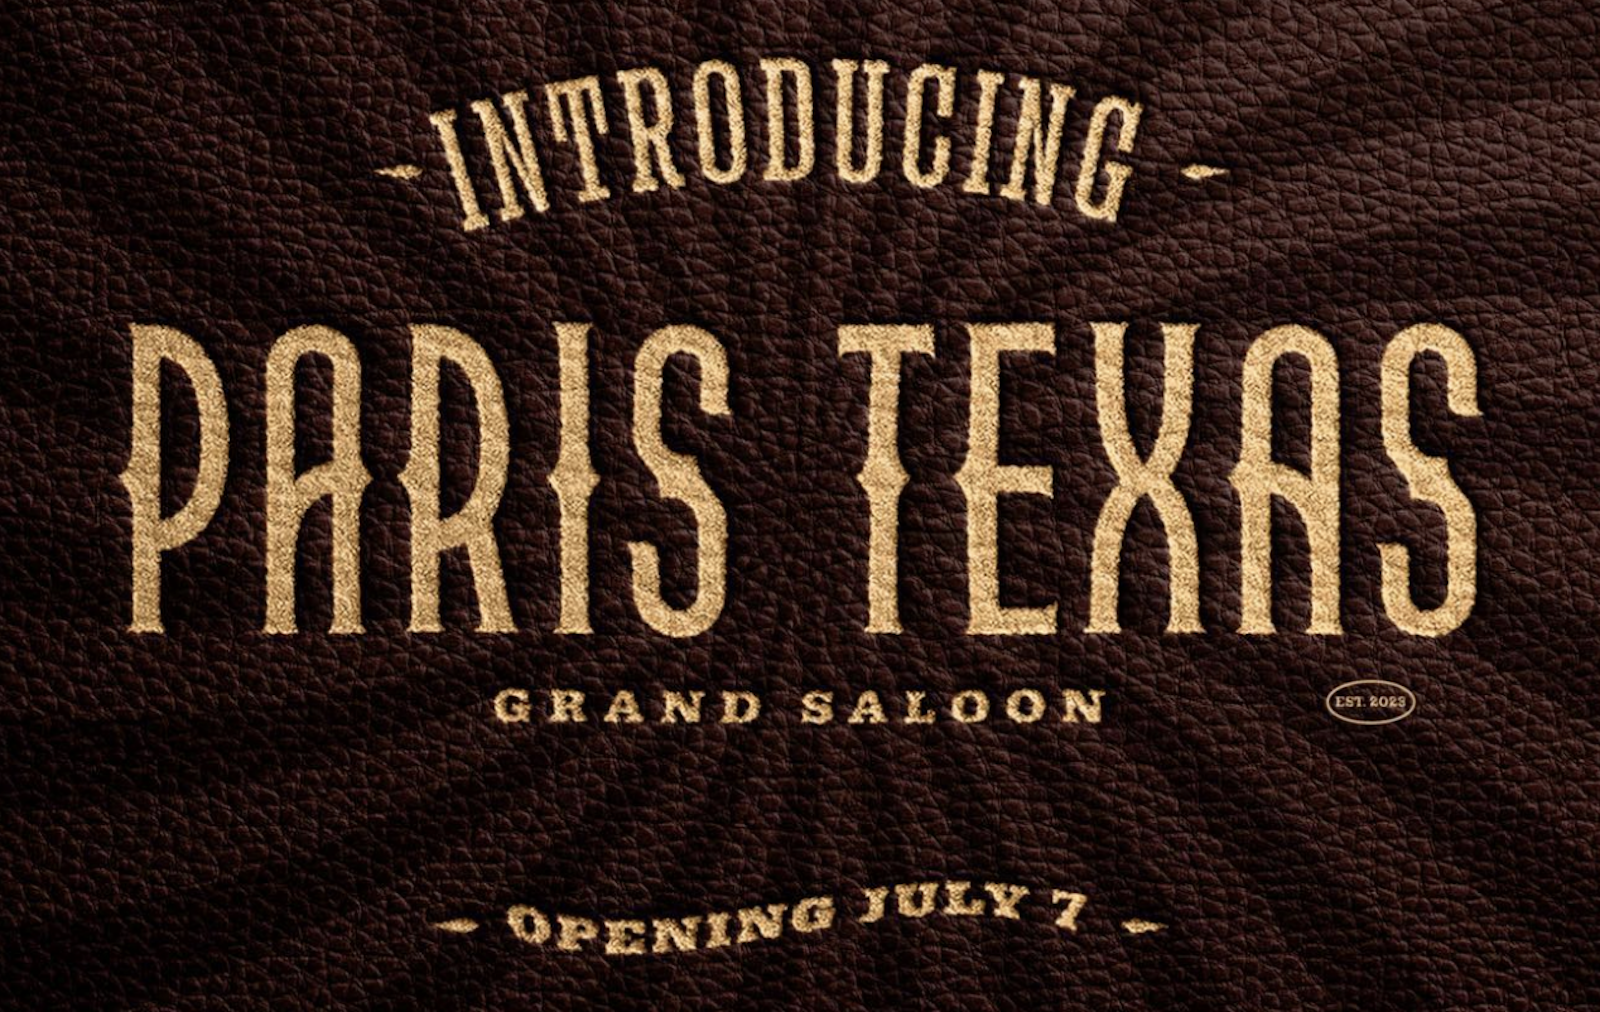 Paris Texas announce their debut album MID AIR